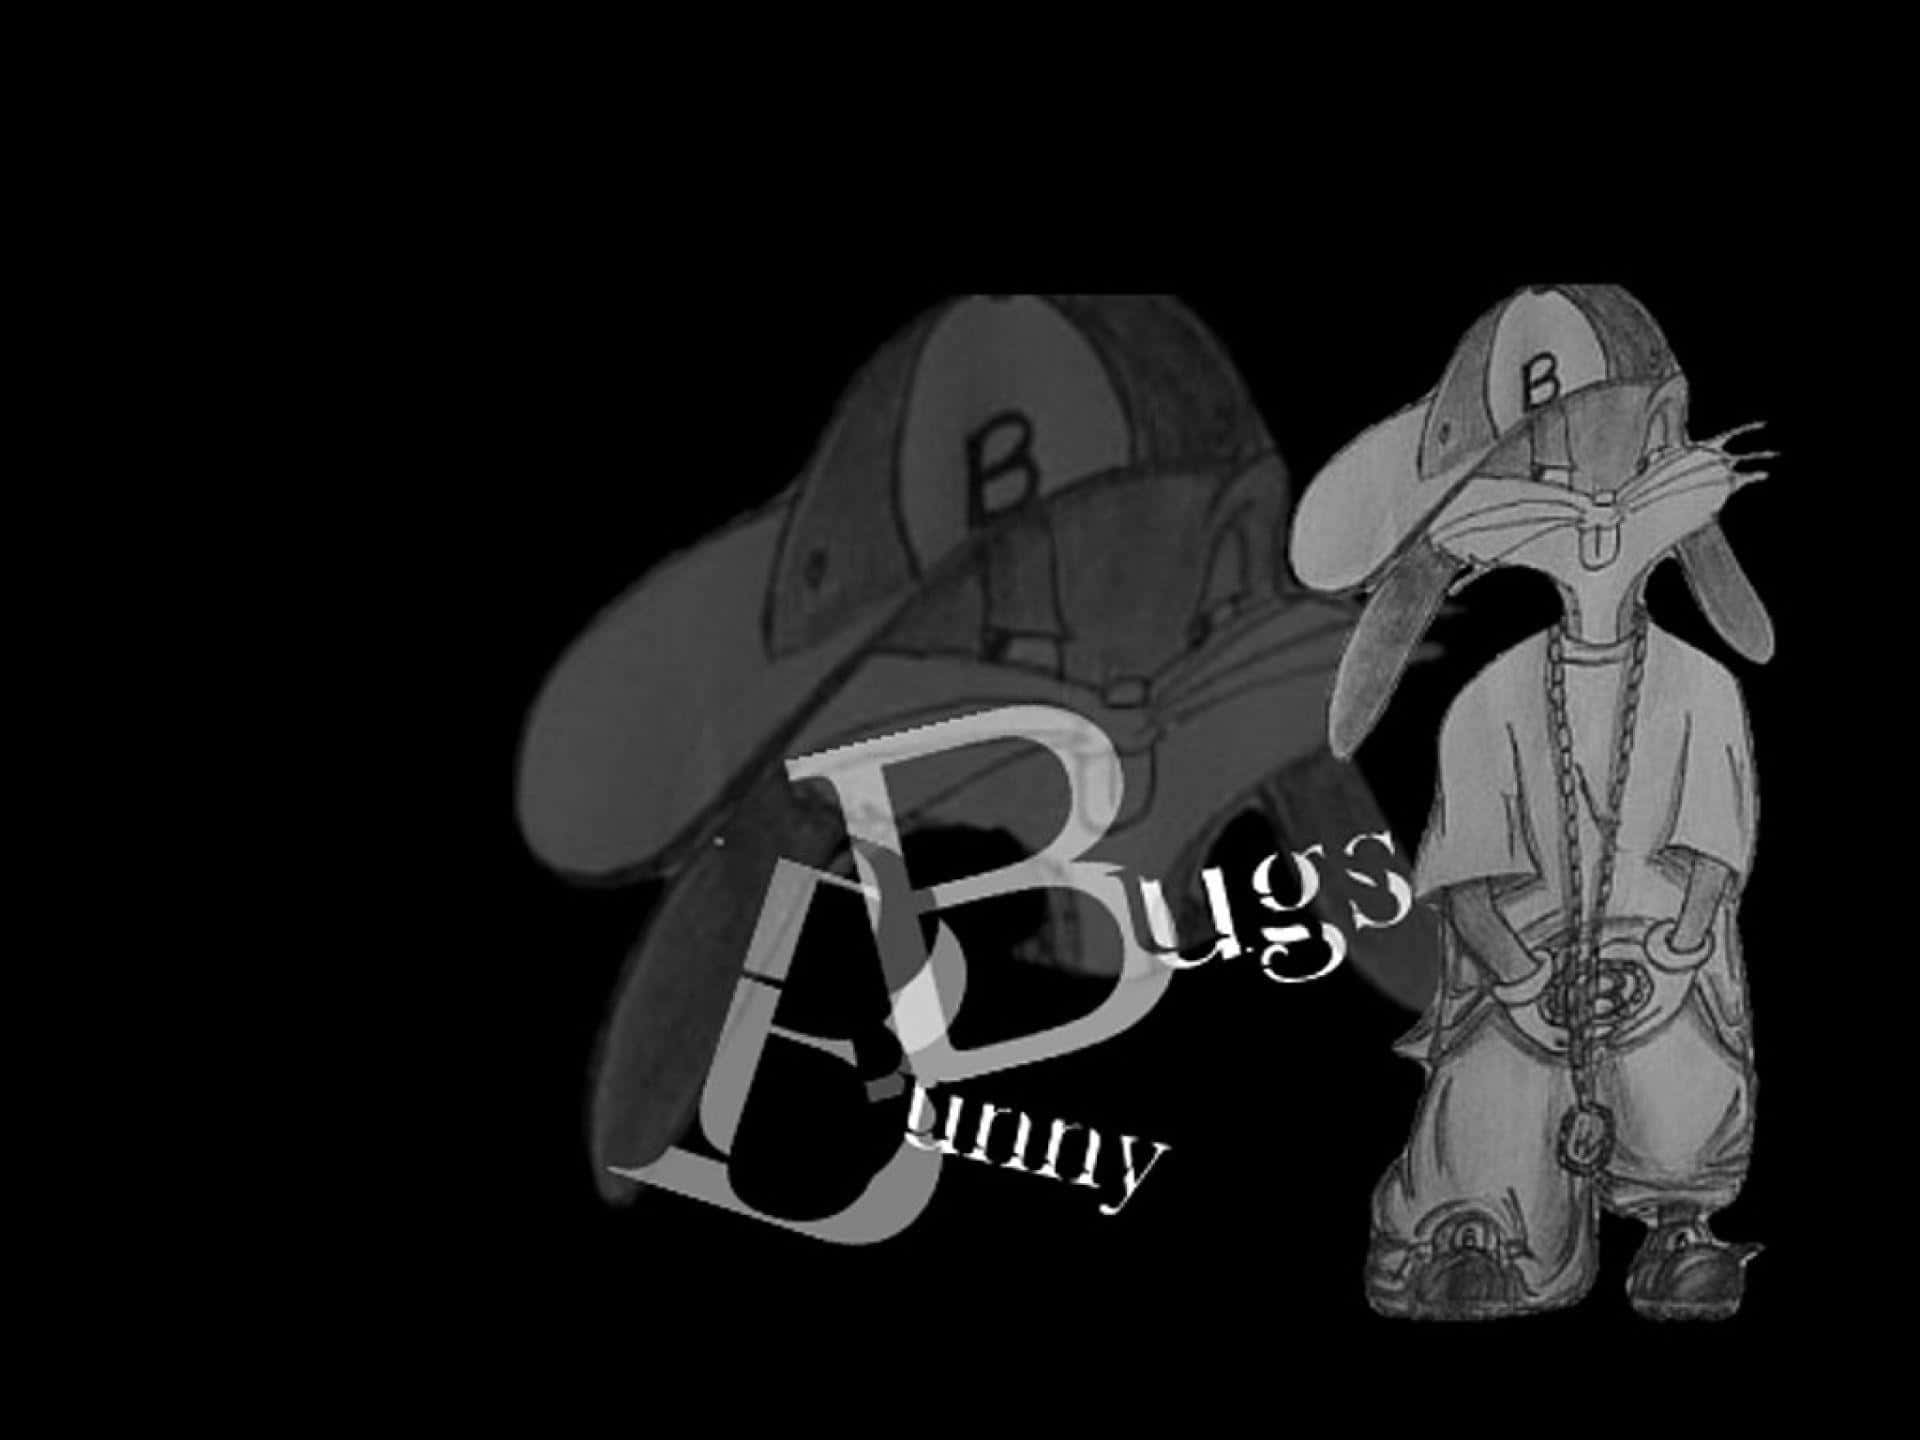 Uniscitia Bugs Bunny In Una Divertente Avventura Piena Di Risate, Intrattenimento Ed Eccitazione!